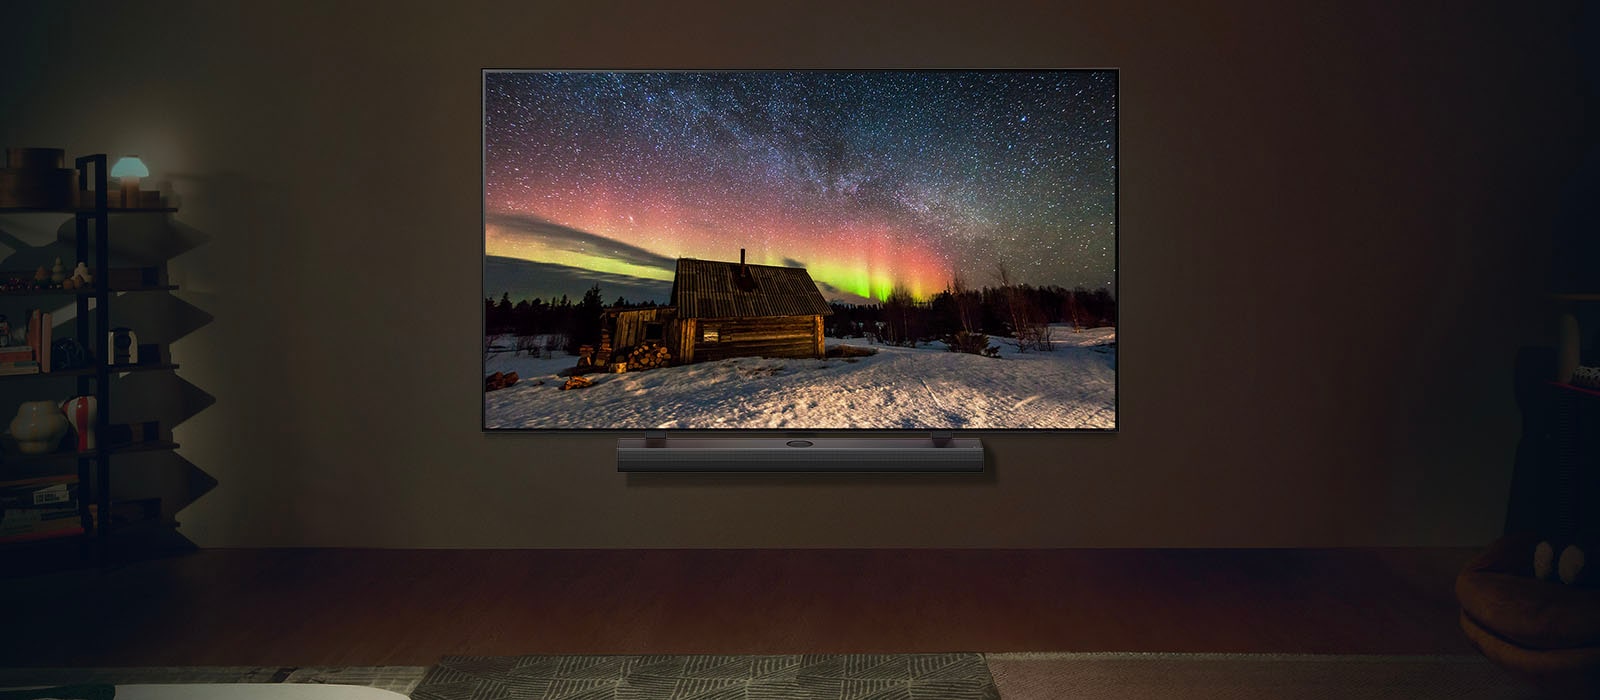 تلفزيون LG TV ومكبر صوت LG Soundbar في غرفة معيشة عصرية في أثناء الليل. تُعرَض صورة للشفق القطبي على الشاشة بمستويات سطوع مثالية.